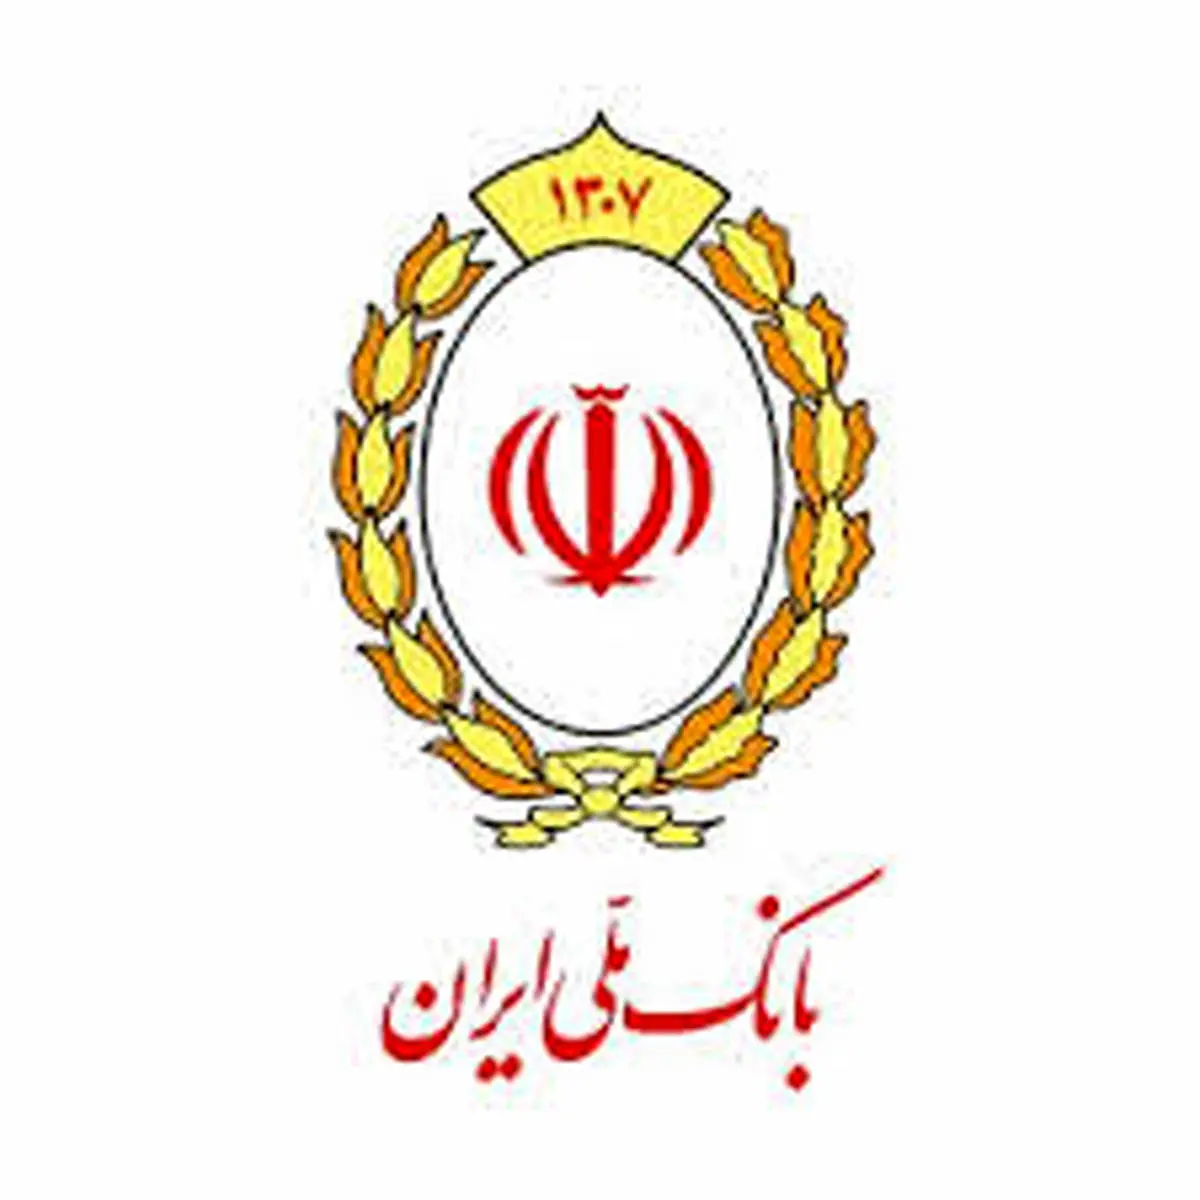 افتتاح دومین شعبه «ملی پلاس» بانک ملی ایران در آینده ای نزدیک

